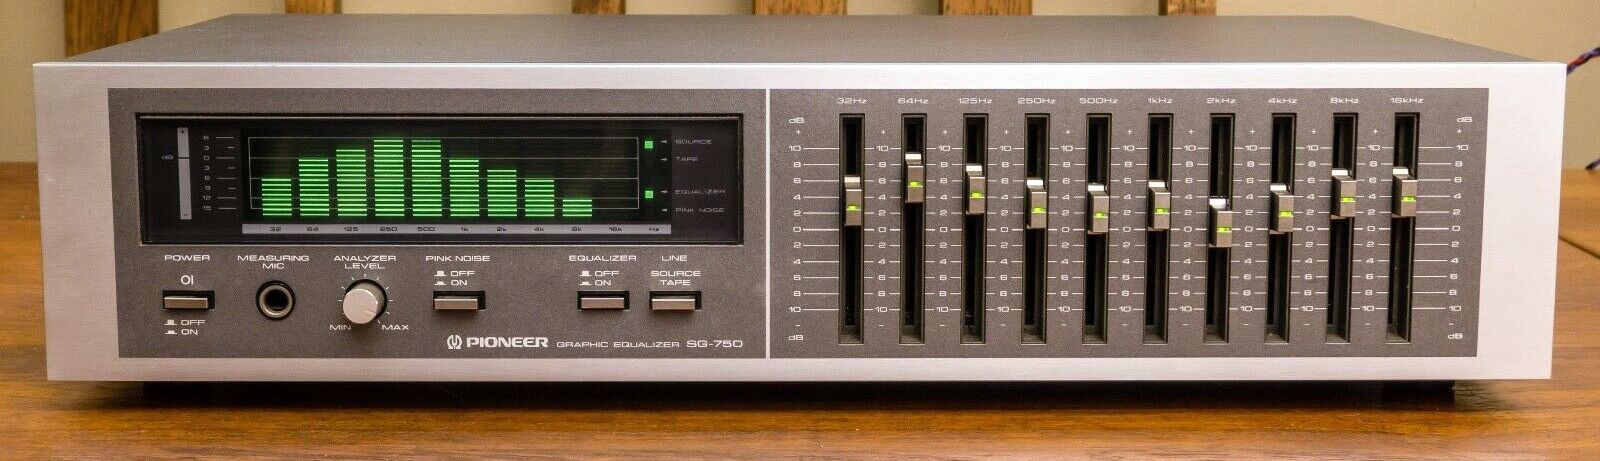 Pioneer SG-750-1984.jpg